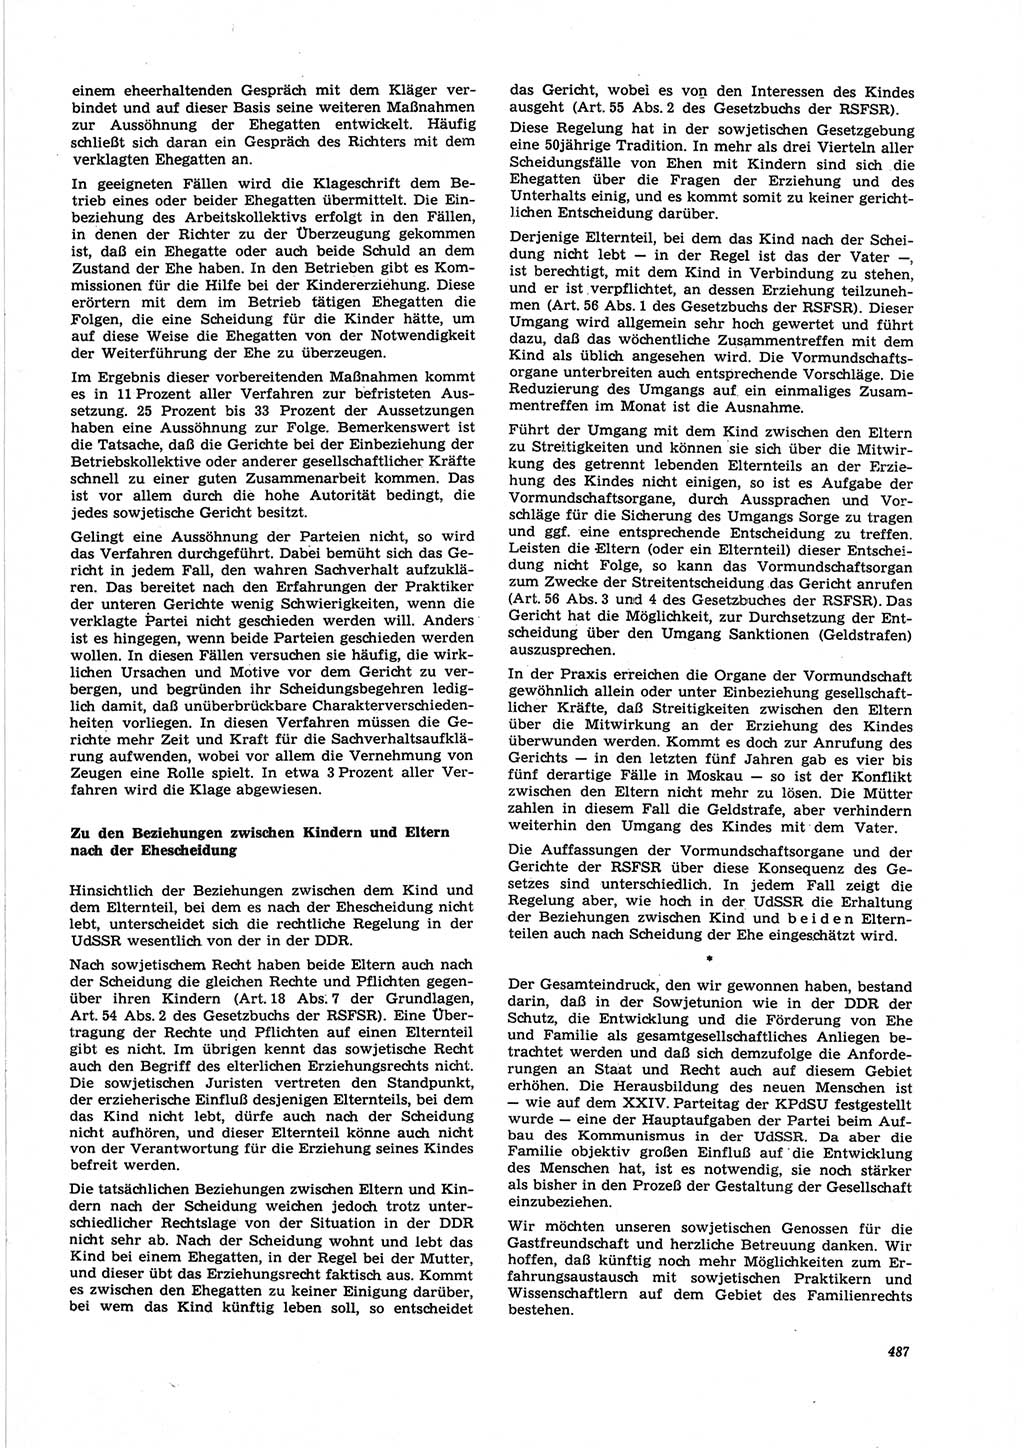 Neue Justiz (NJ), Zeitschrift für Recht und Rechtswissenschaft [Deutsche Demokratische Republik (DDR)], 25. Jahrgang 1971, Seite 487 (NJ DDR 1971, S. 487)